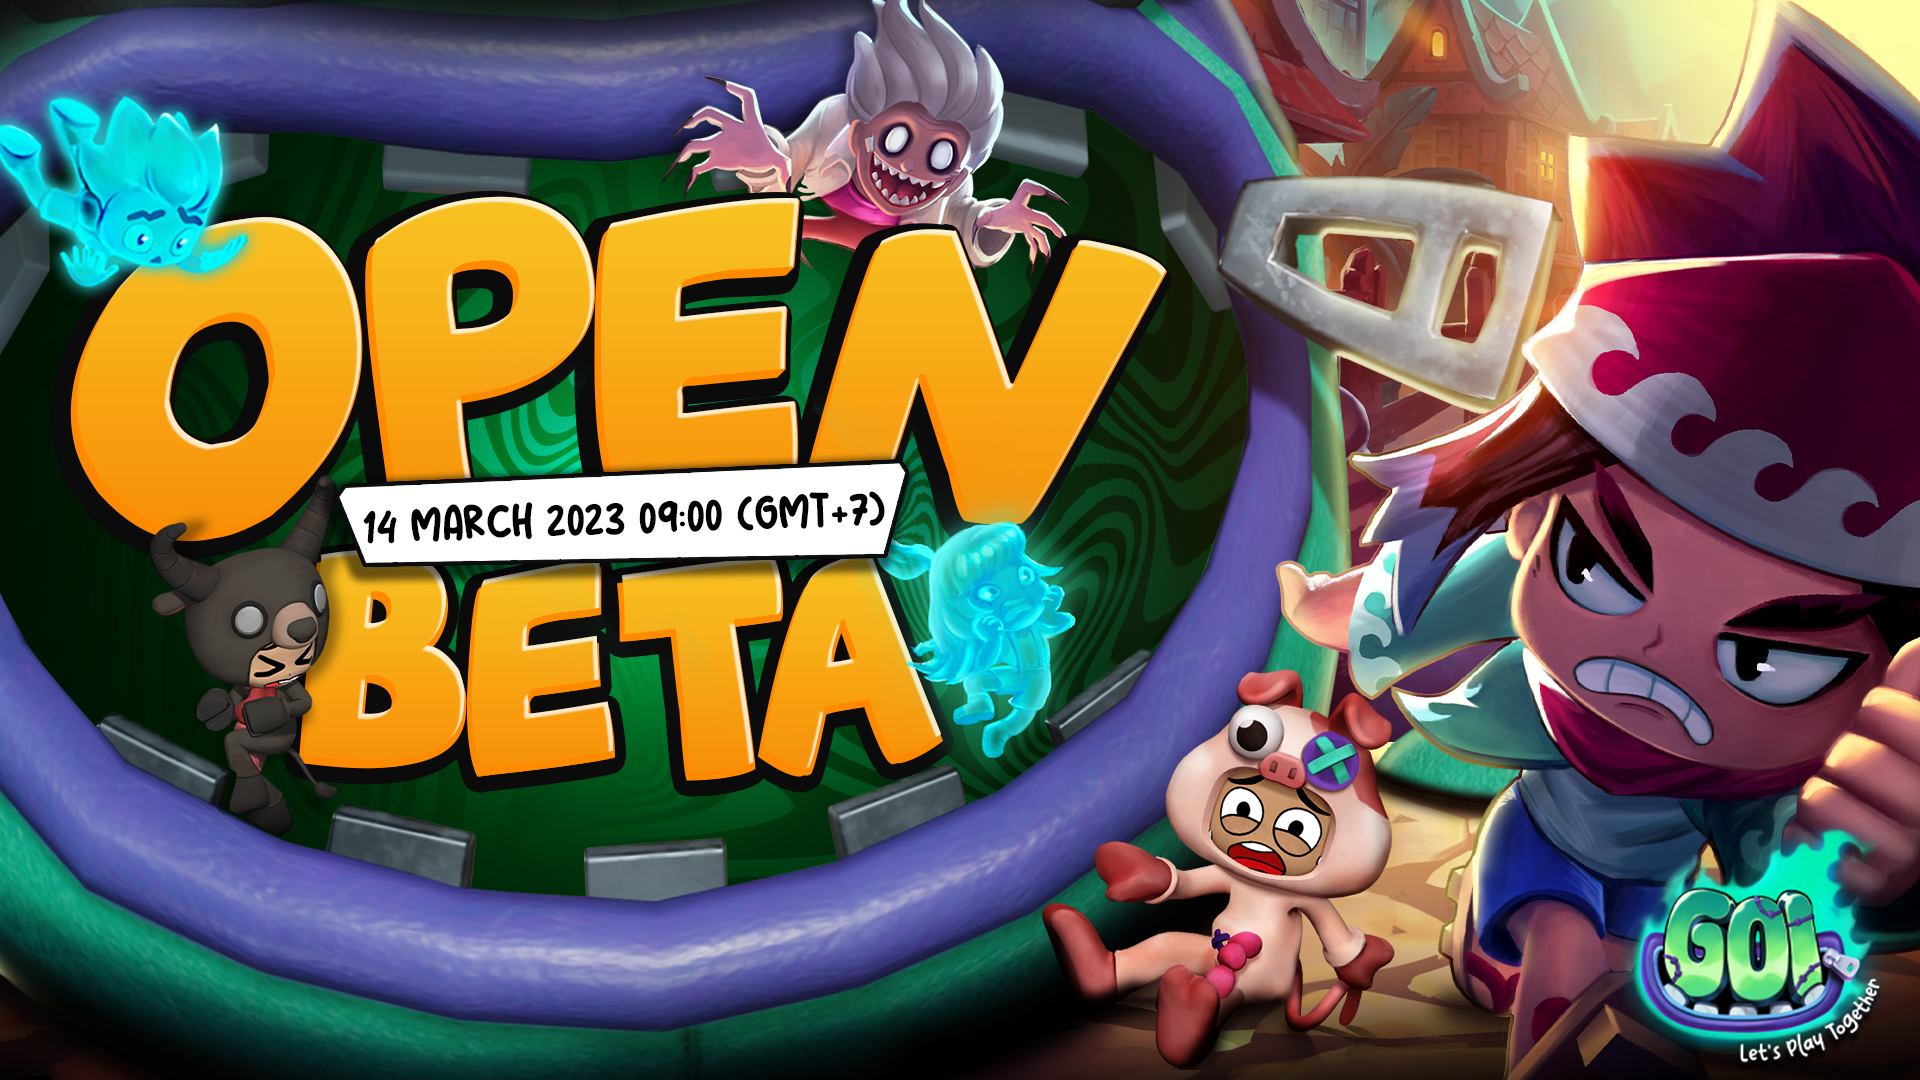 Goi: Let’s Play Together ประกาศเปิด Open Beta พร้อมกันทั่วโลก 14 มีนาคมนี้! เตรียมฮาให้สุดเสียงกับปาร์ตี้เกมแนวเอาตัวรอดสุดป่วนแห่งปี